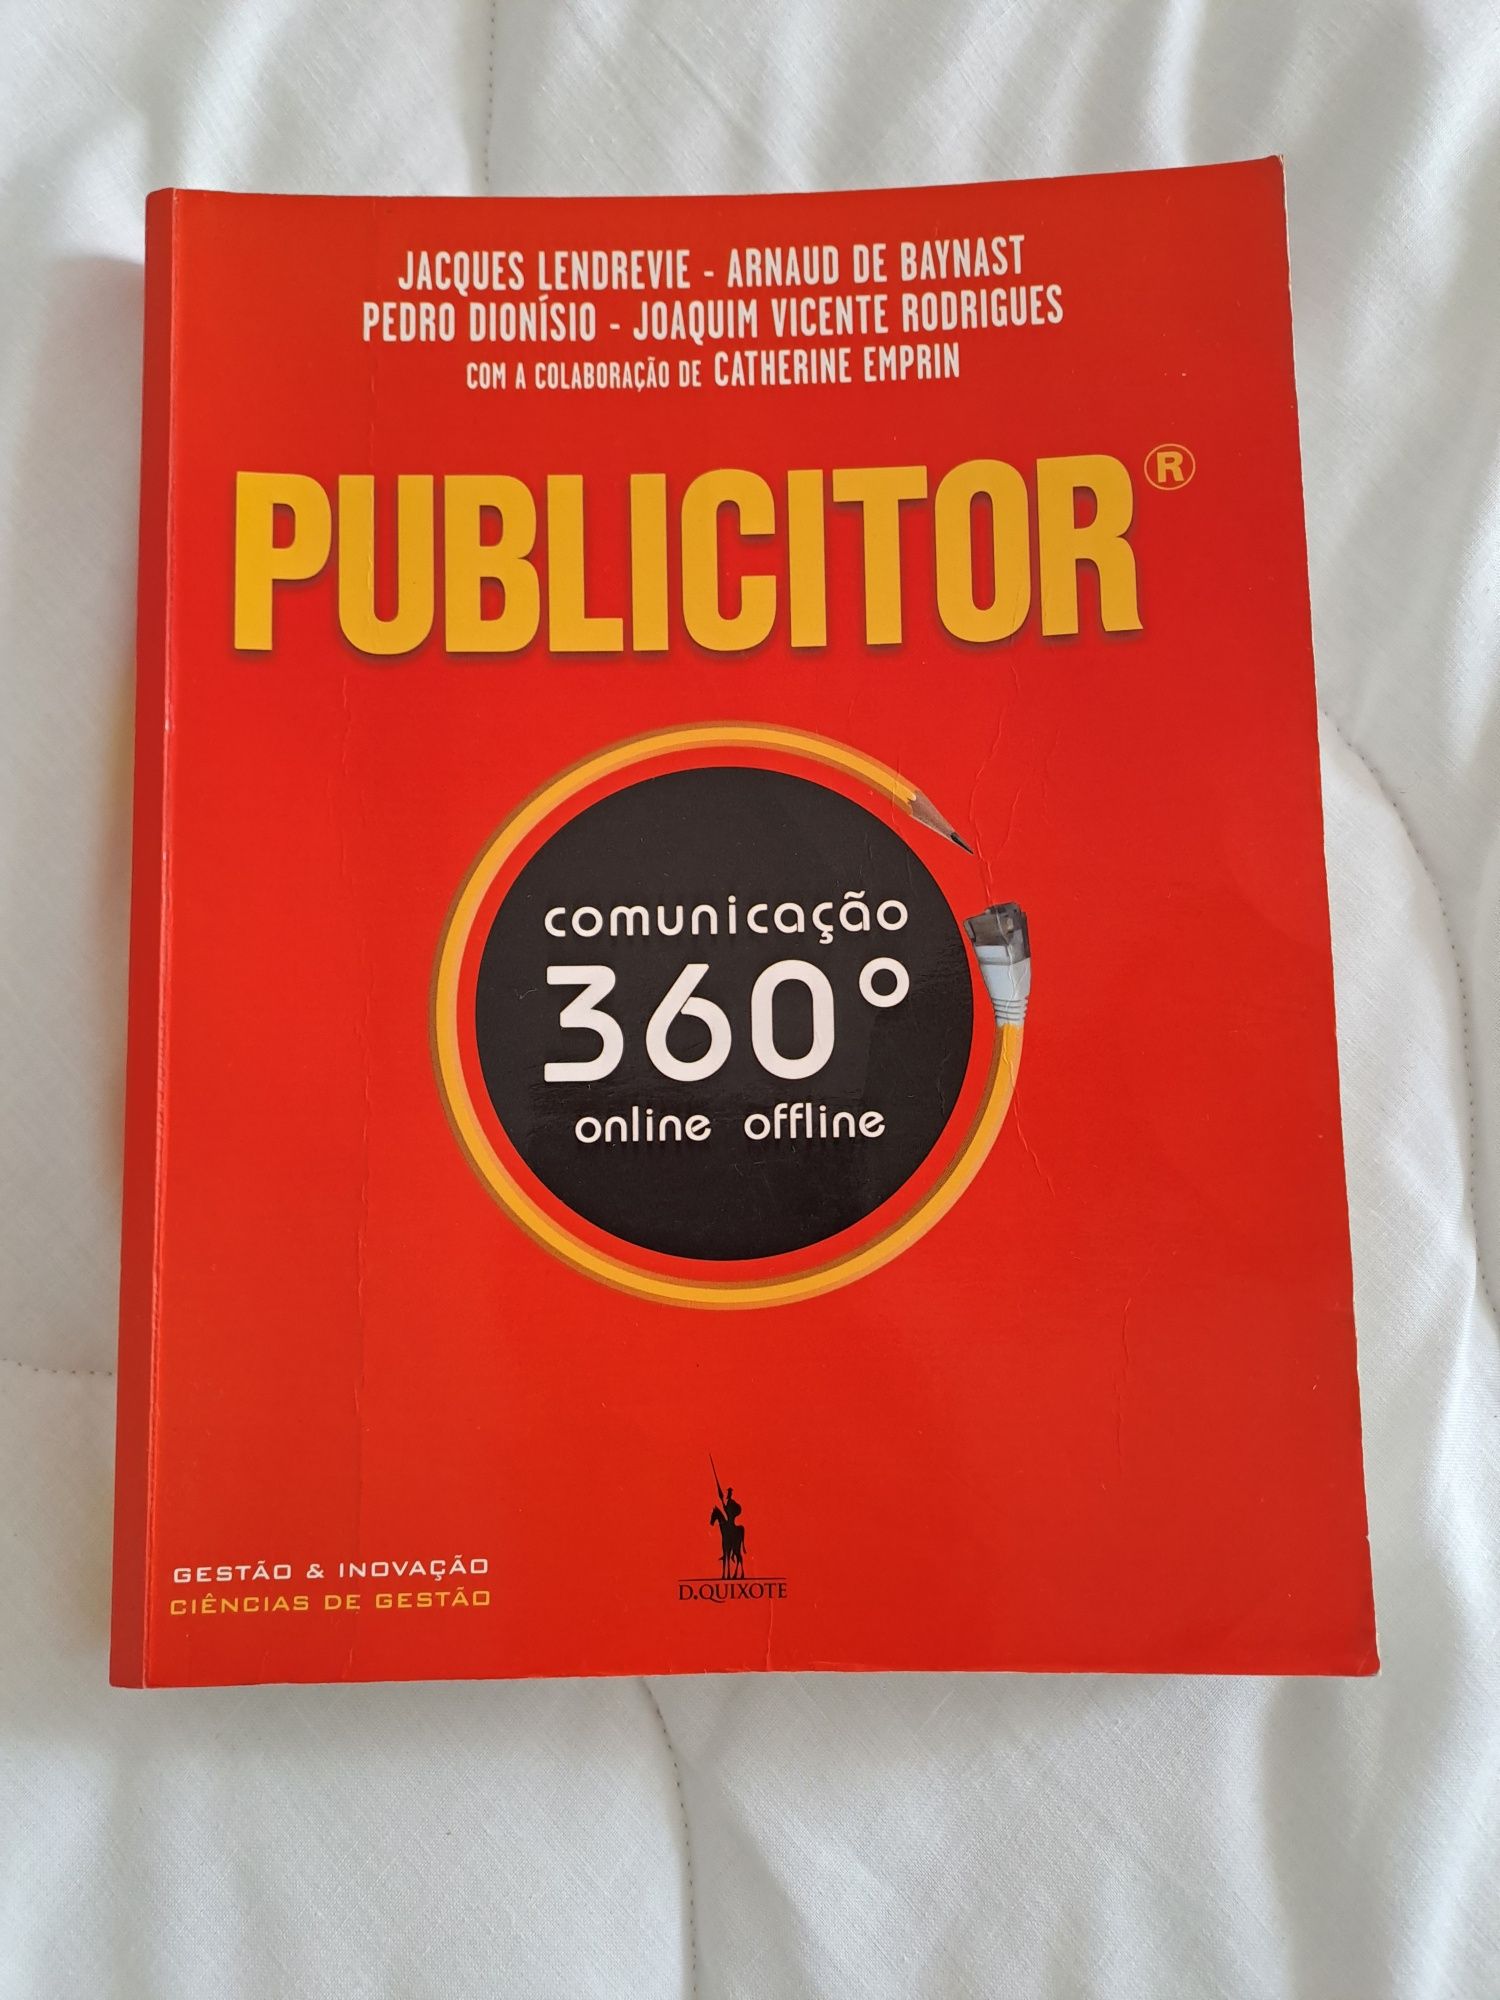 Livro "Publicitor-Comunicação 360° Online e Offline" de Jacques Lendre